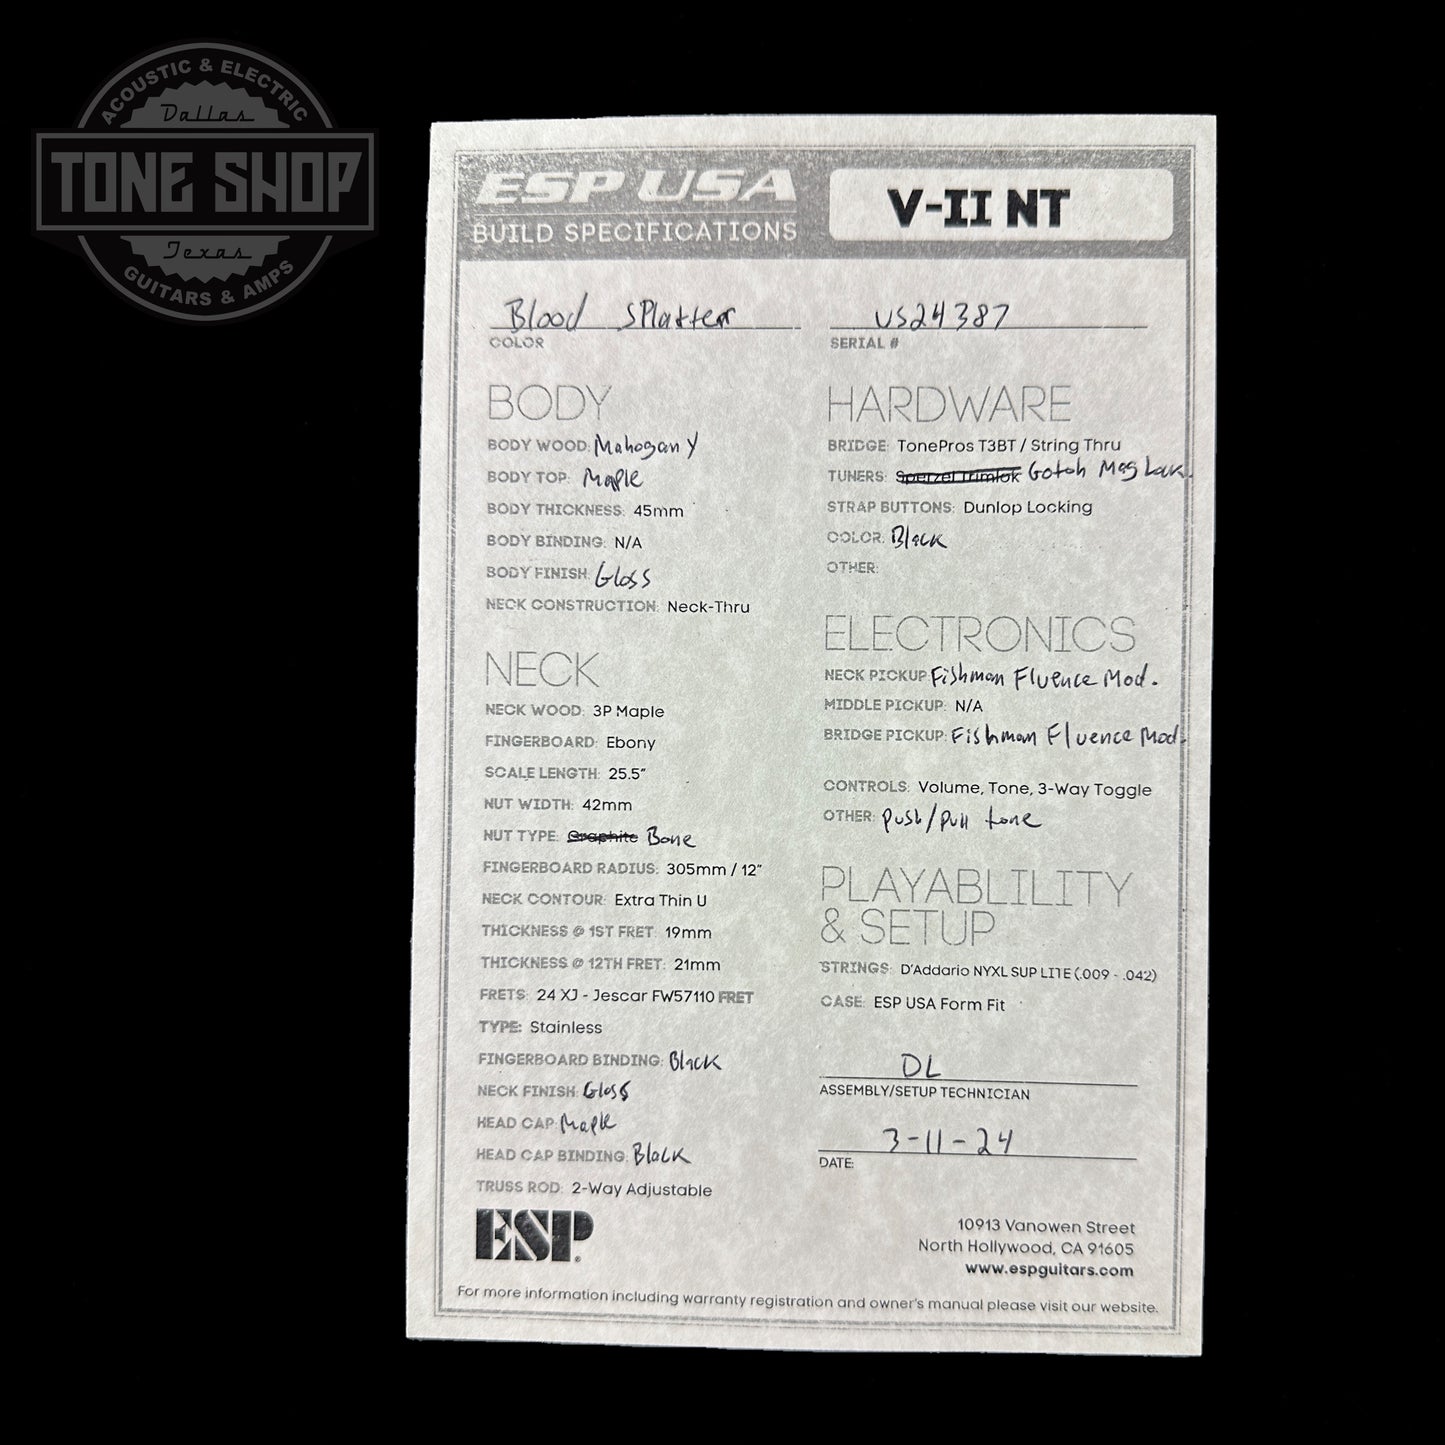 Spec sheet for ESP USA V-II NT Blood Splatter.